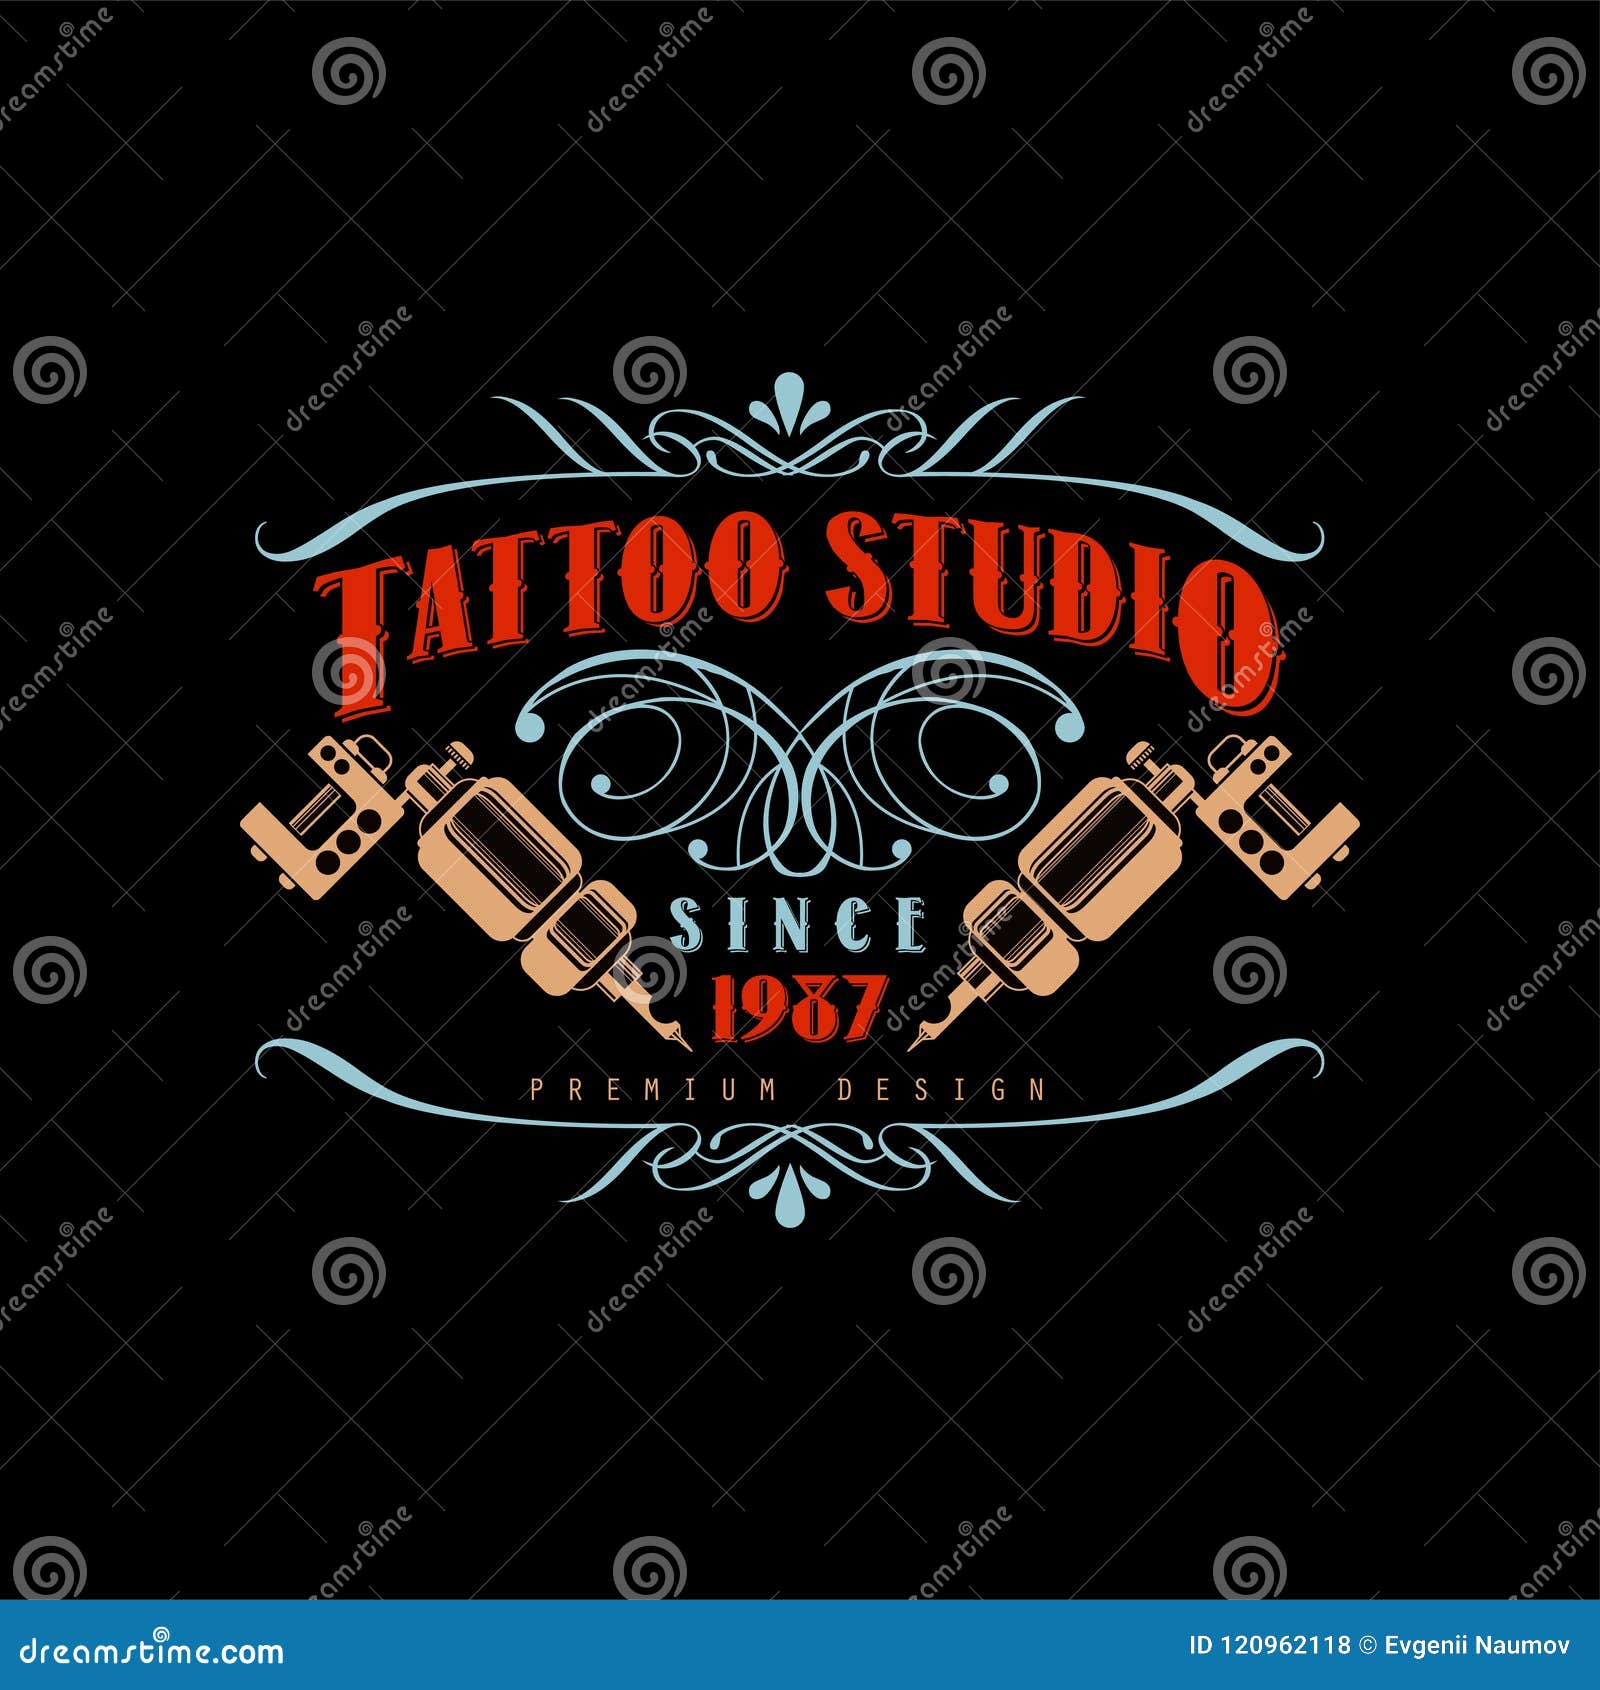 Set of vintage tattoo studio logos. | Tattoo studio, Vintage tattoo, Studio  logo